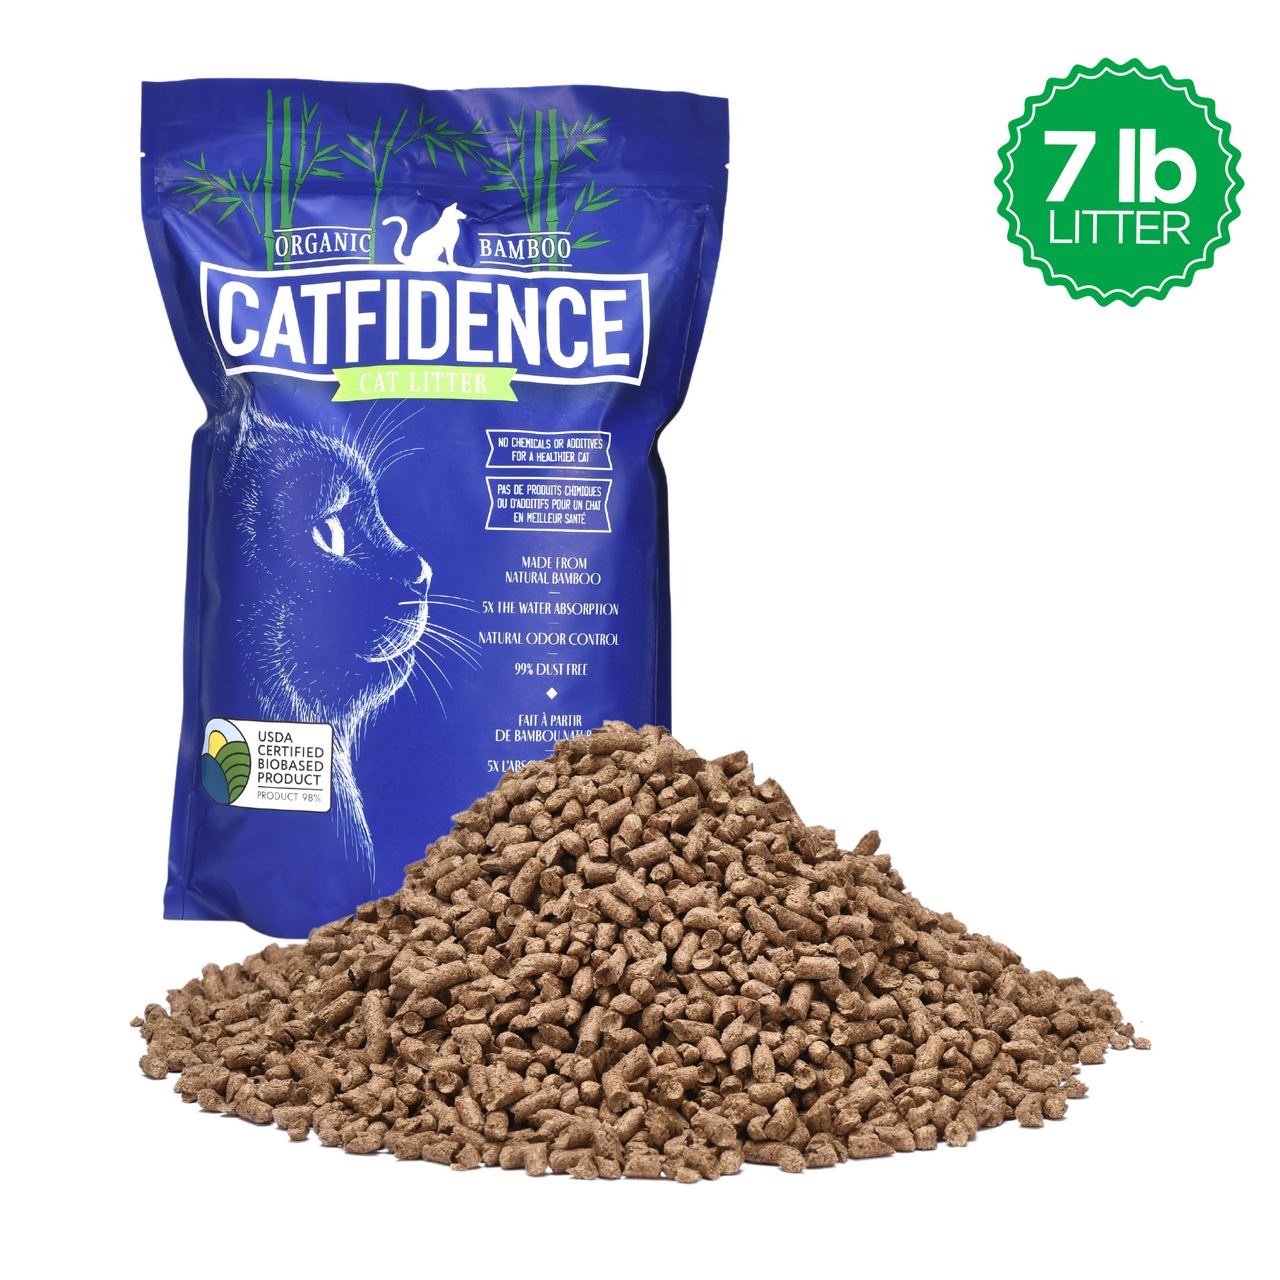 Catfidence® 7lb Bamboo Cat Litter Bag